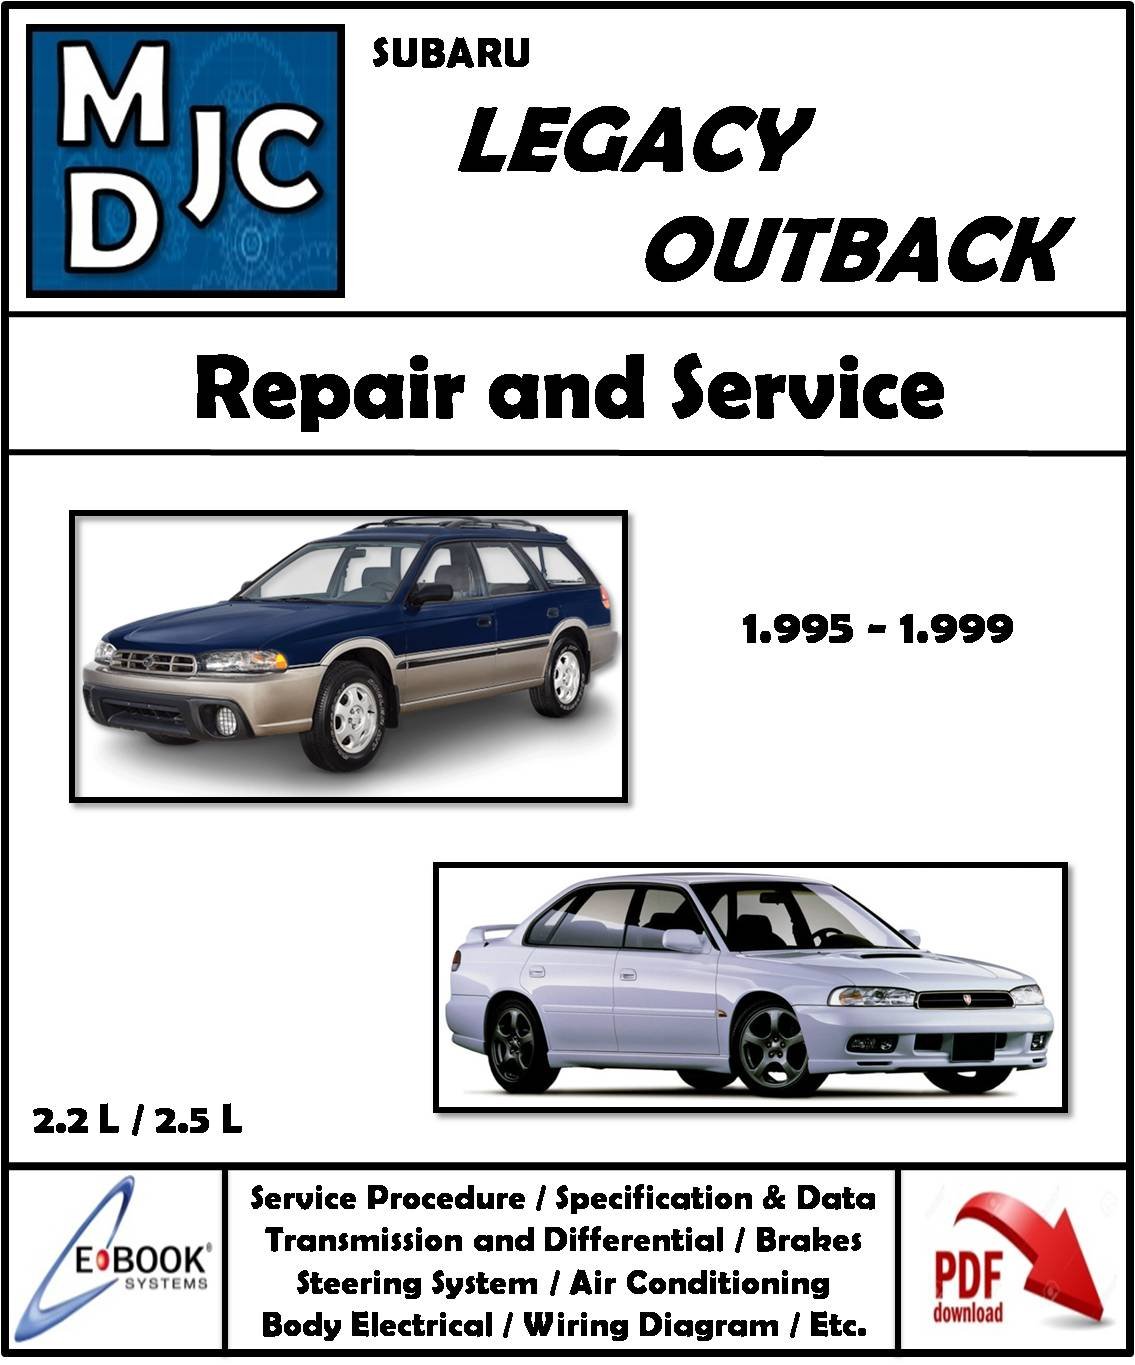 Subaru Legacy - Outback / 1995 - 1999